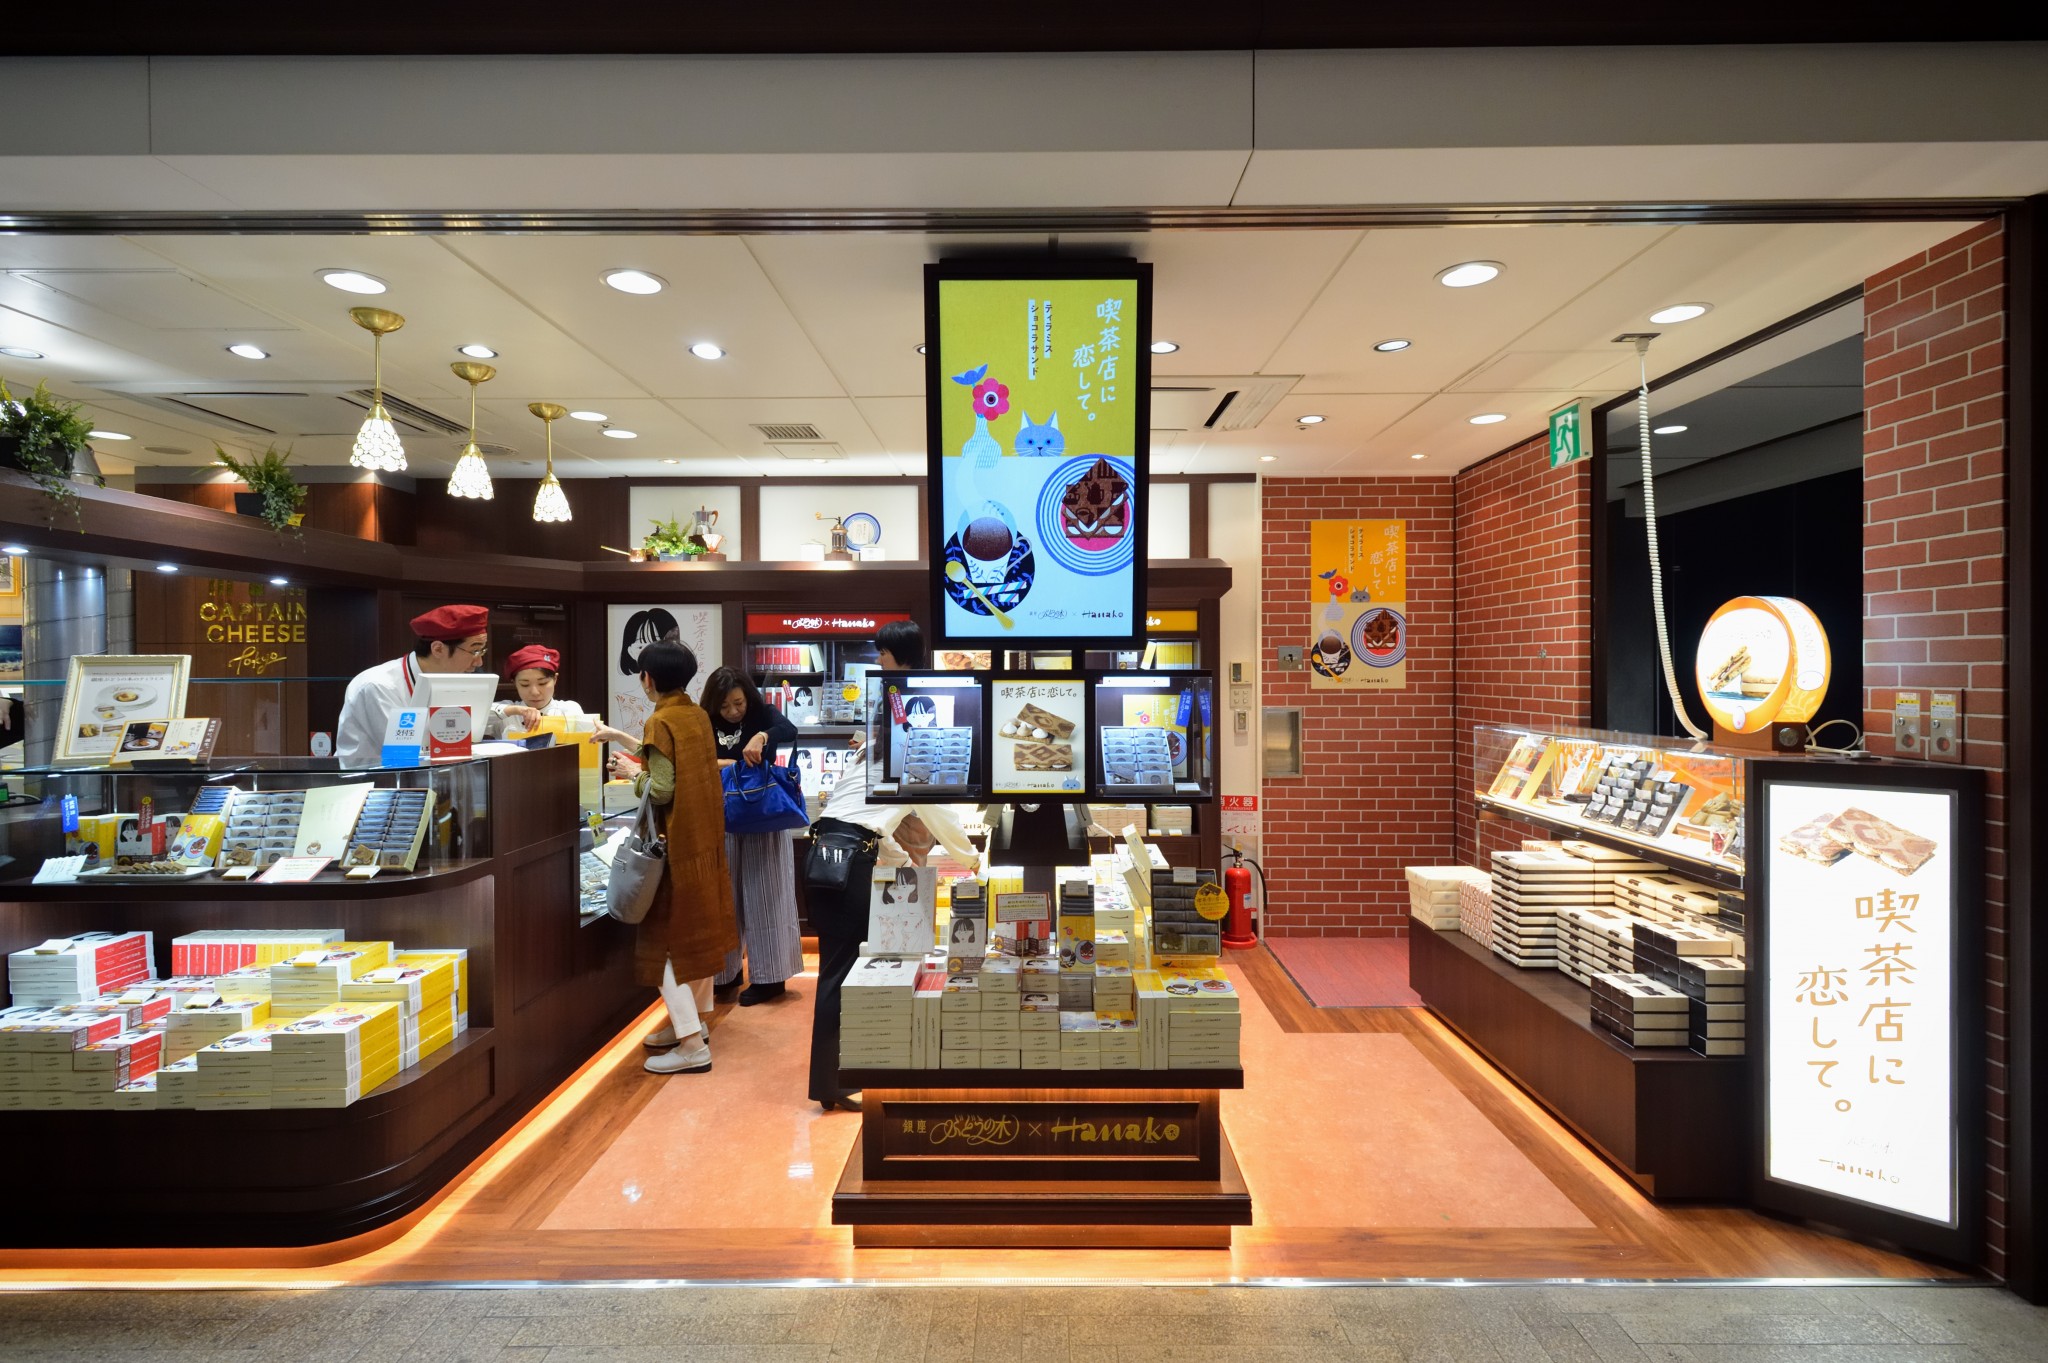 東京駅限定スイーツ 喫茶店に恋して のオンリーショップがオープン